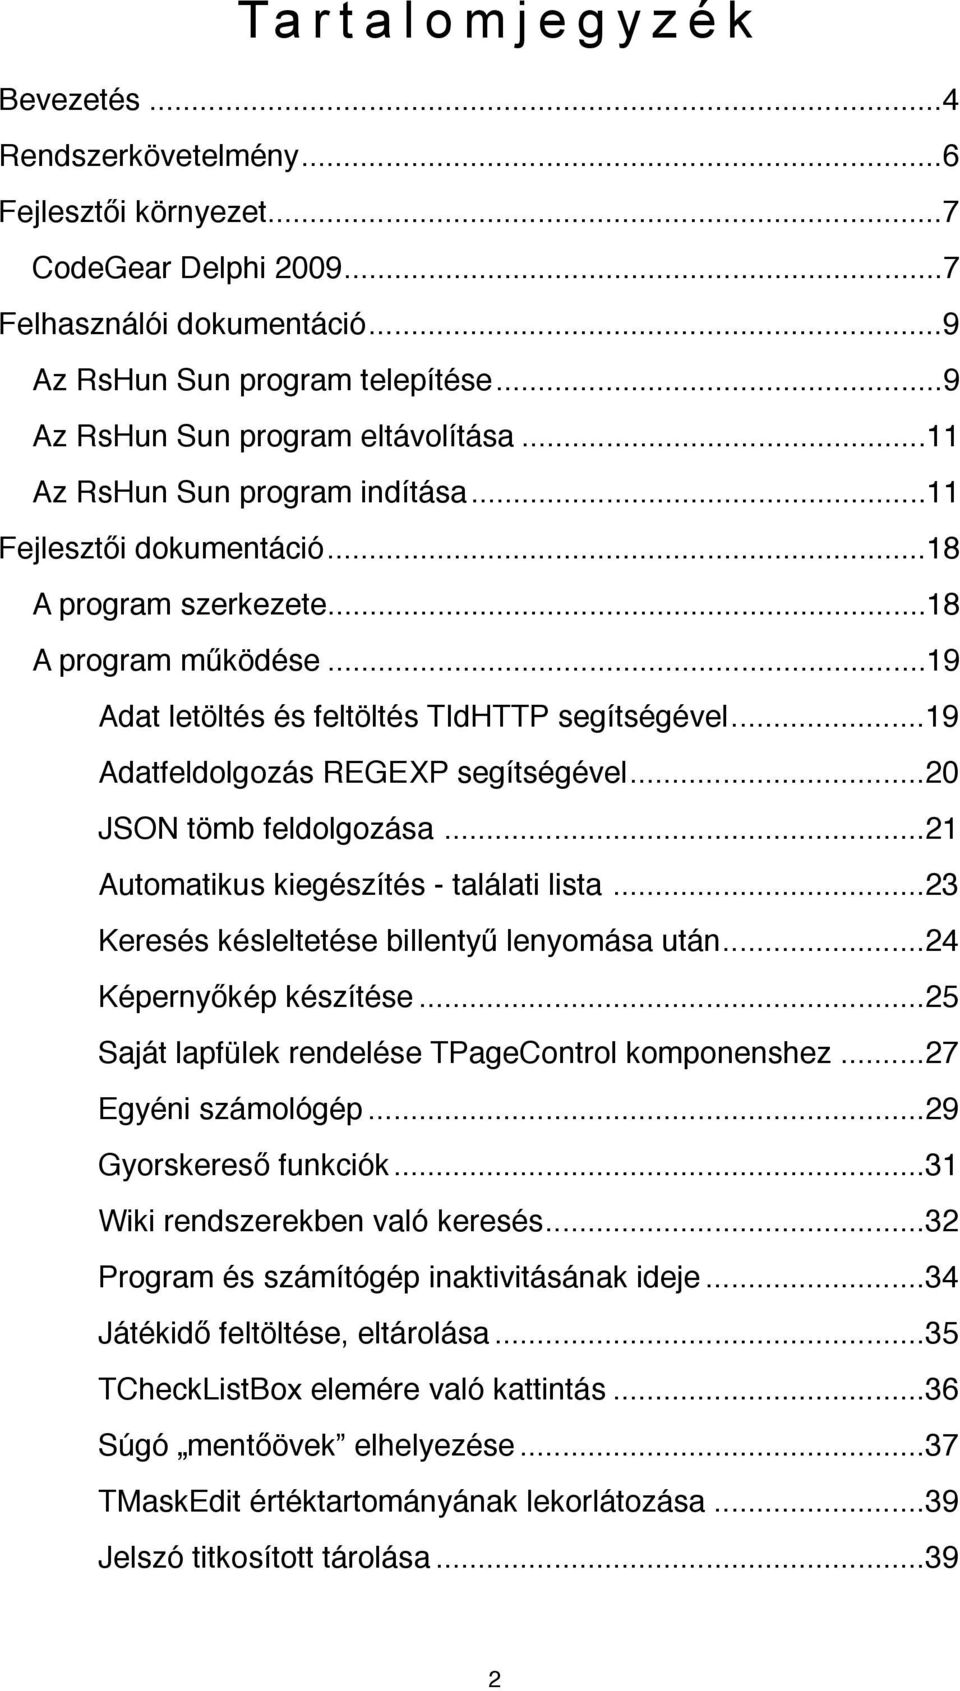 ... 19 Adat letöltés és feltöltés TIdHTTP segítségével!... 19 Adatfeldolgozás REGEXP segítségével!... 20 JSON tömb feldolgozása!... 21 Automatikus kiegészítés - találati lista!